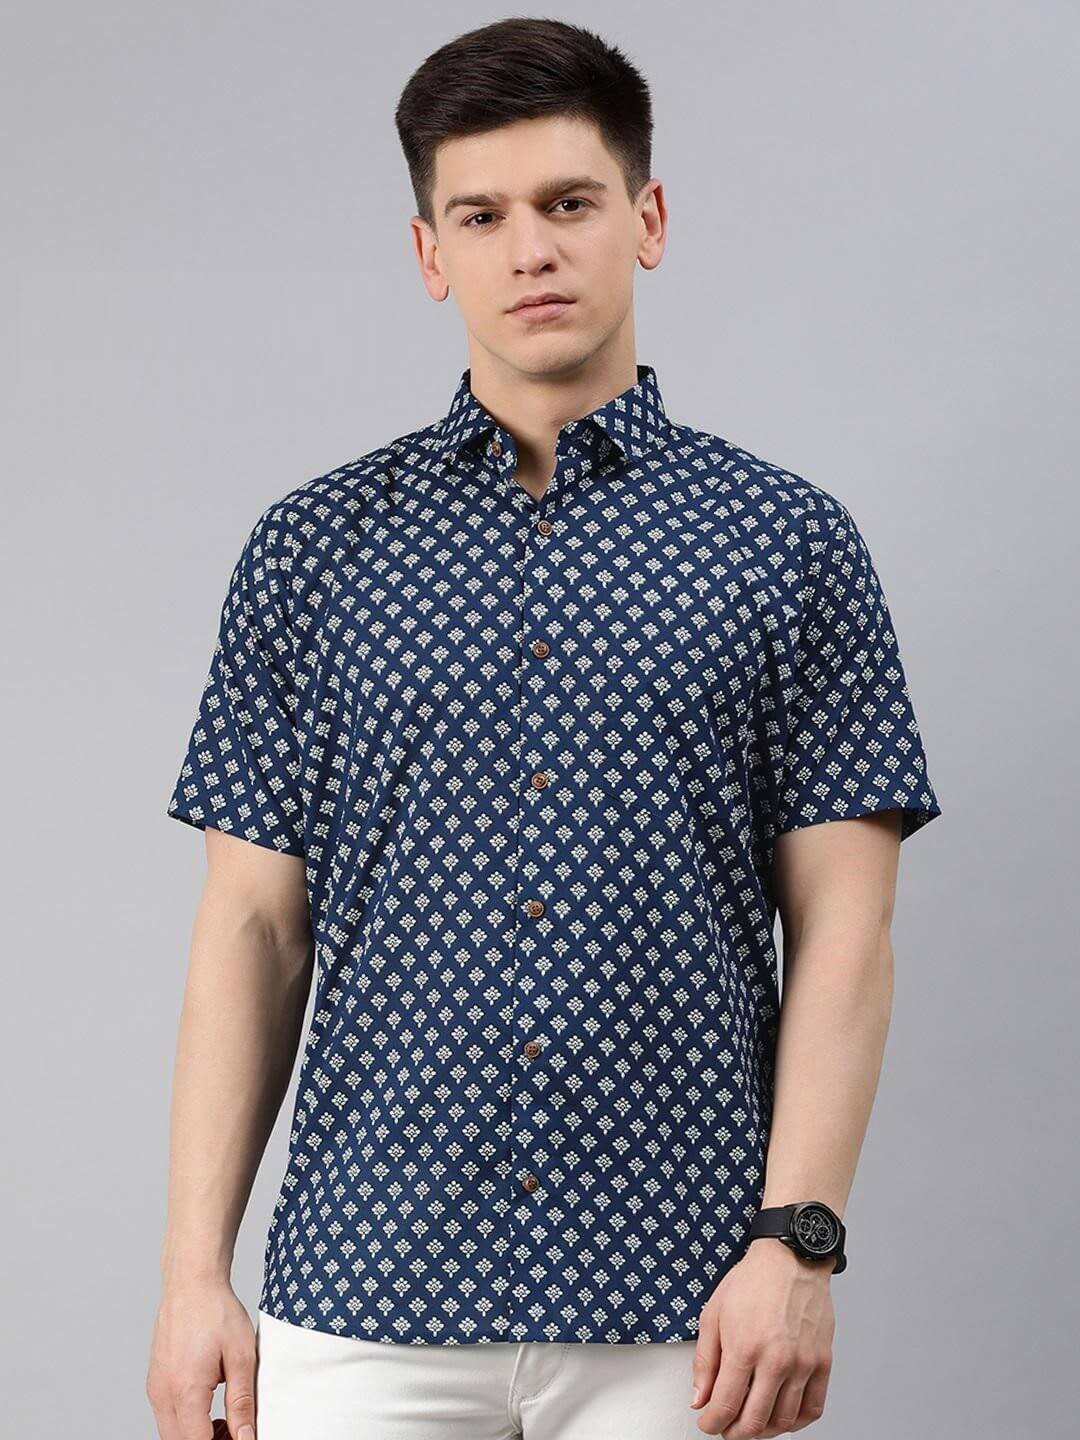 Men's Printed Cotton Shirt  from FabricKart